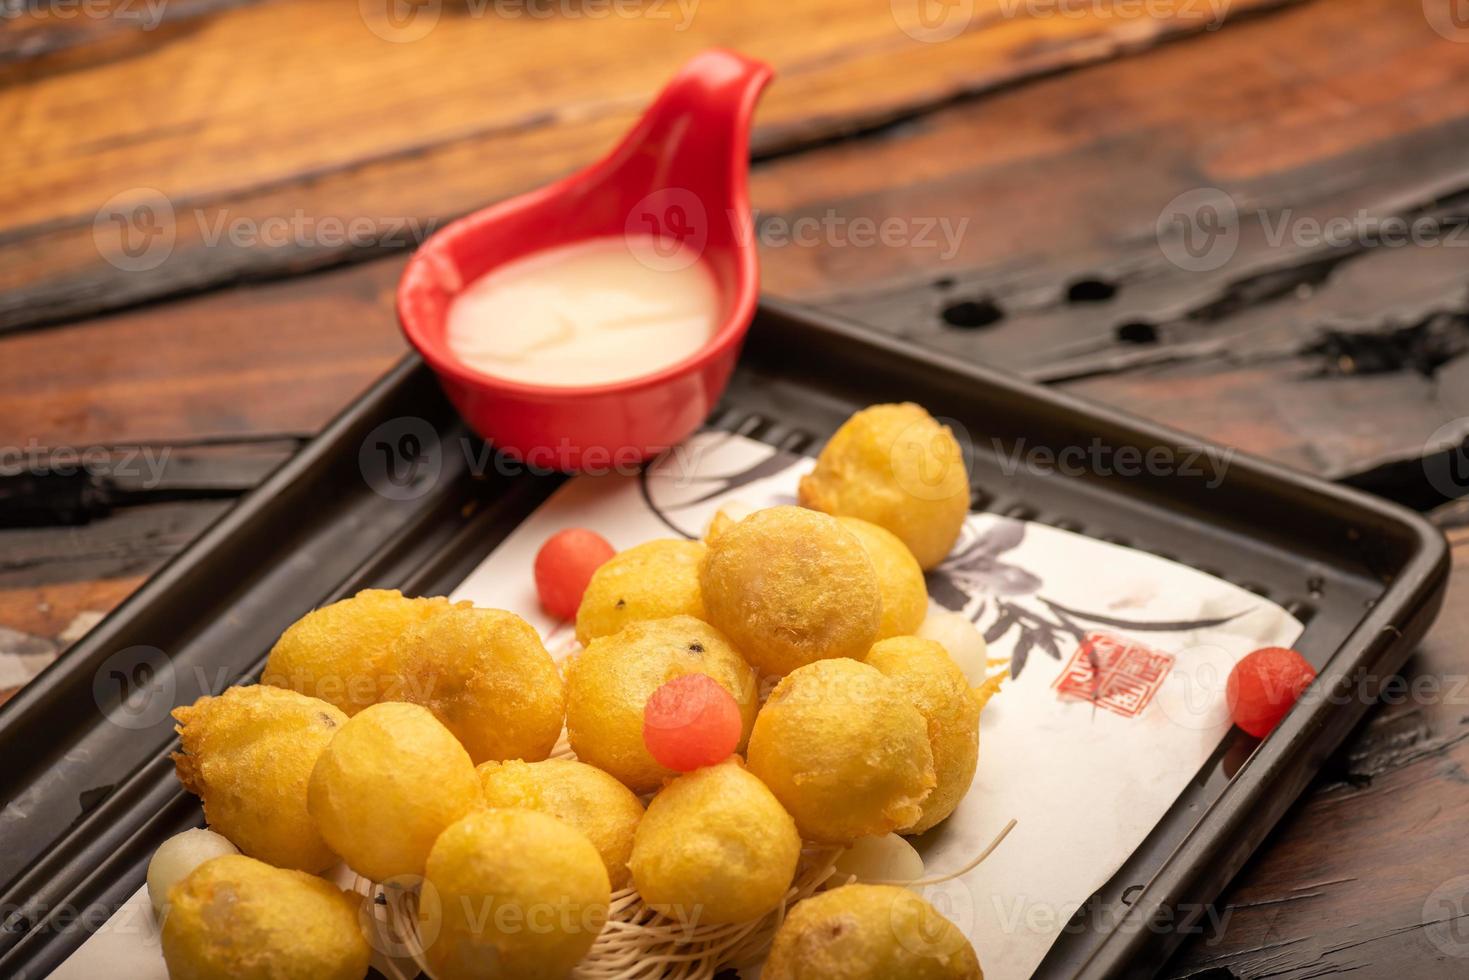 Platos tradicionales chinos para banquetes, bolas de arroz glutinoso frito. foto